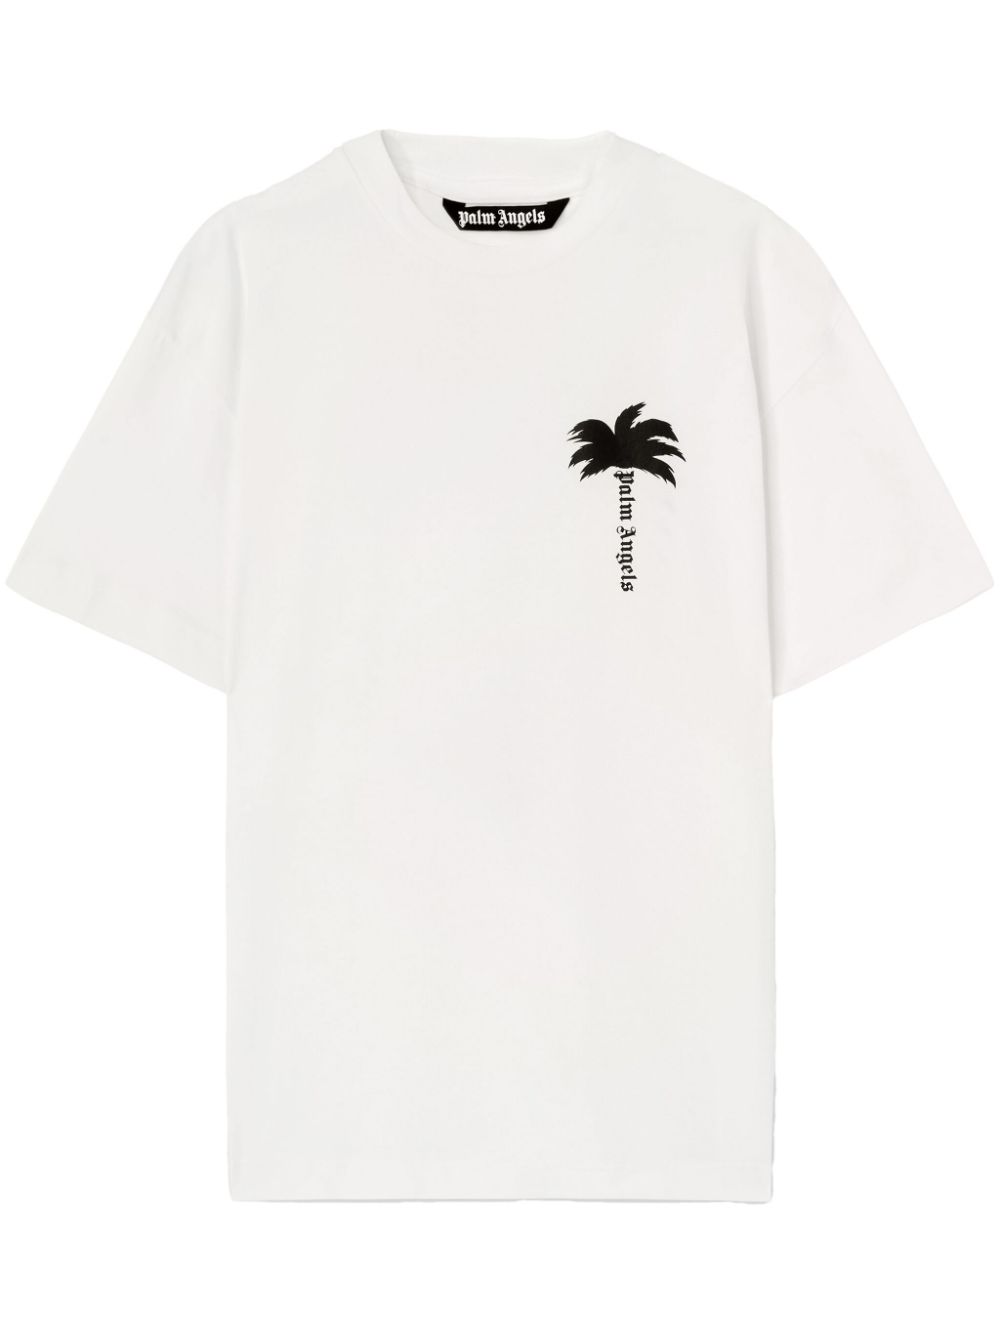 Cotton T-shirt PALM ANGELS PMAA089F23JER002 1001 - Ancote